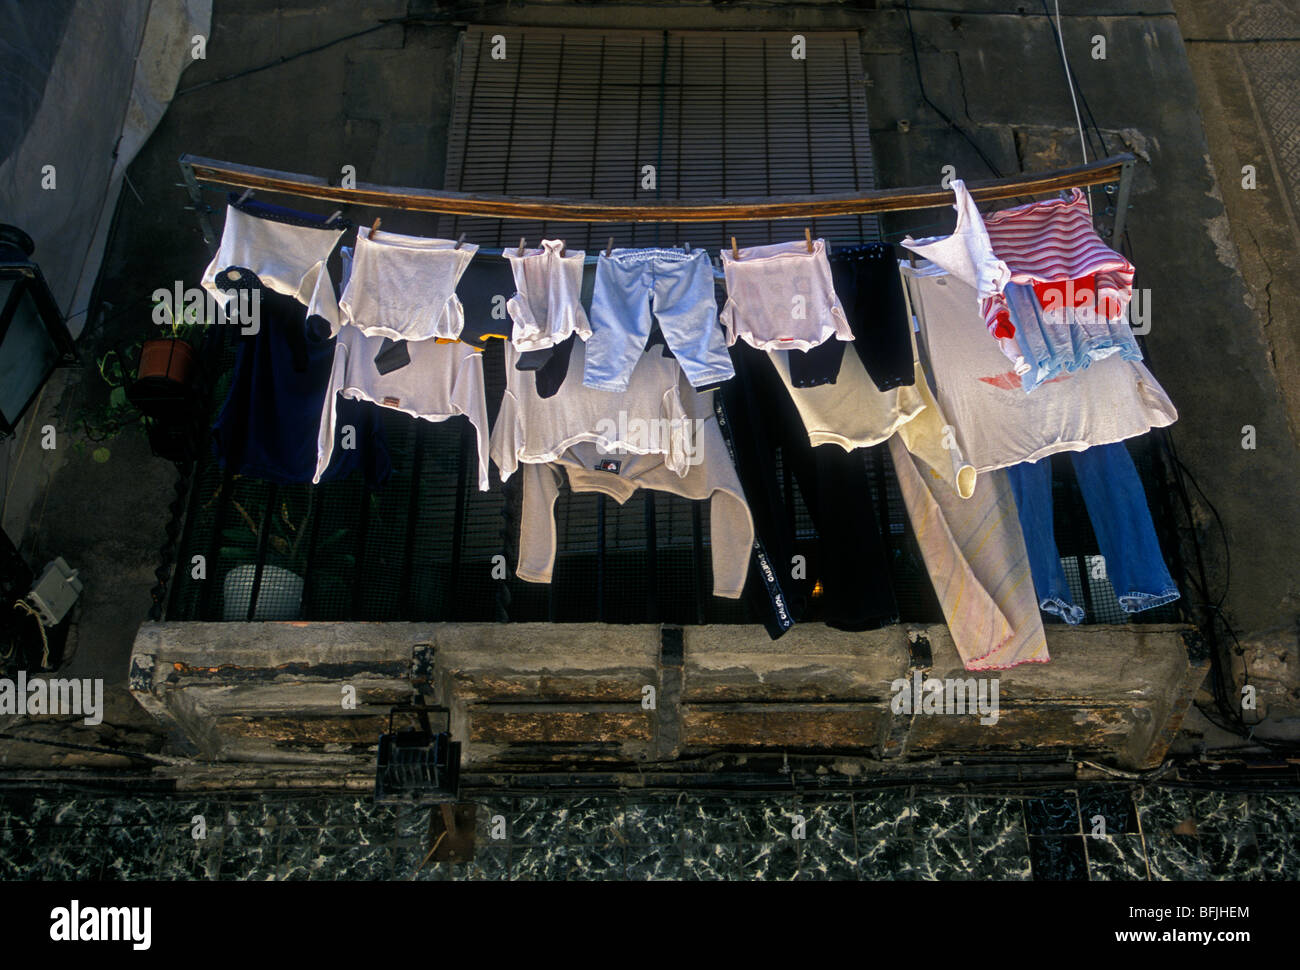 Das Trocknen von Wäsche, Trocknen, trocknen Kleidung, Balkon, Ribera, Bezirk, Stadt Barcelona, Provinz Barcelona, Spanien, Europa Stockfoto